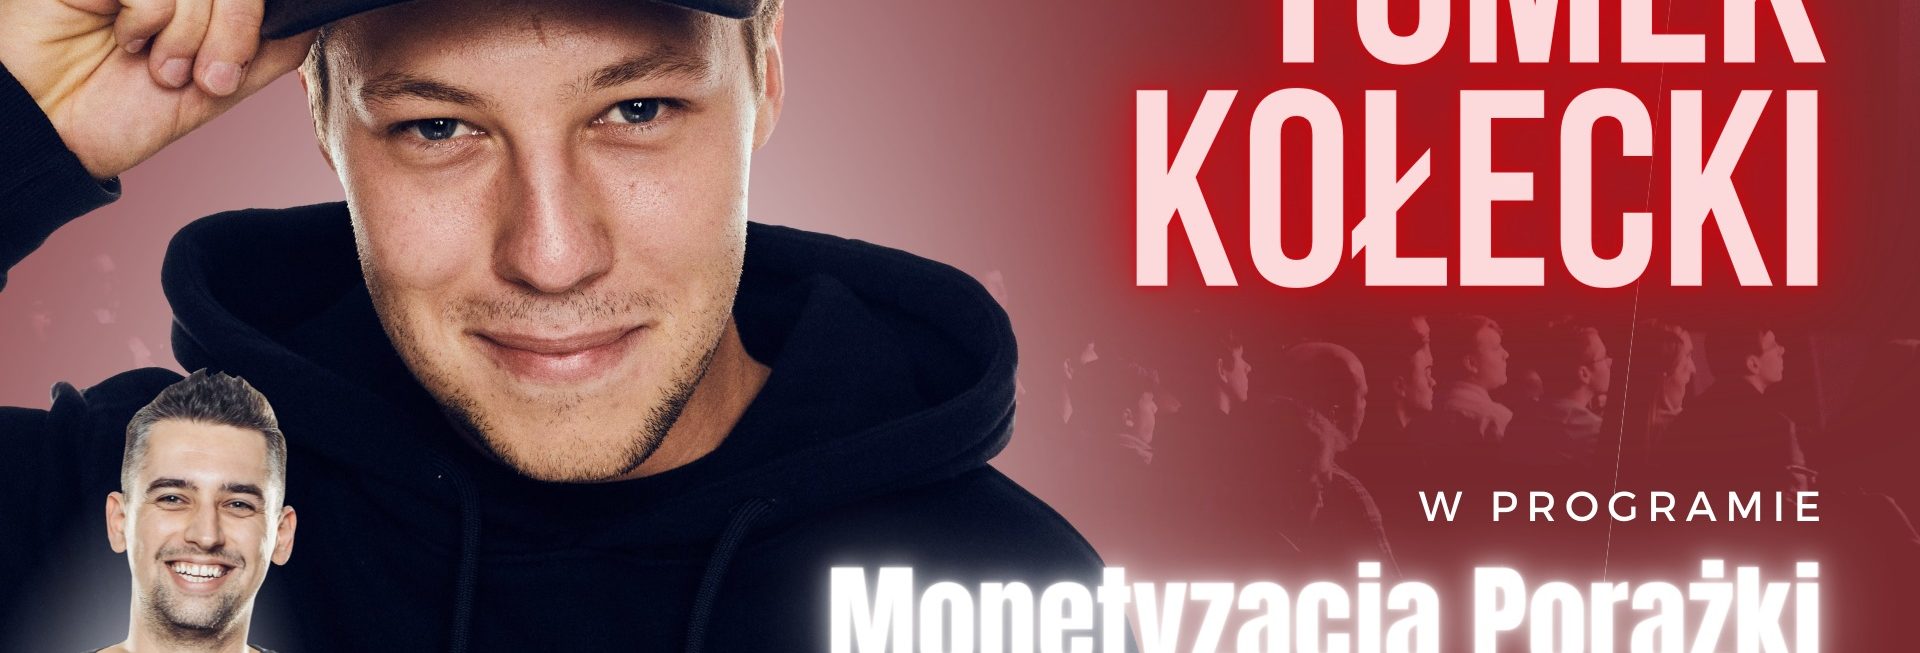 Plakat graficzny zapraszający do Klubu Mjazzga w Elblągu na Stand-up Tomek Kołecki "Monetyzacja Porażki" Elbląg 2022.